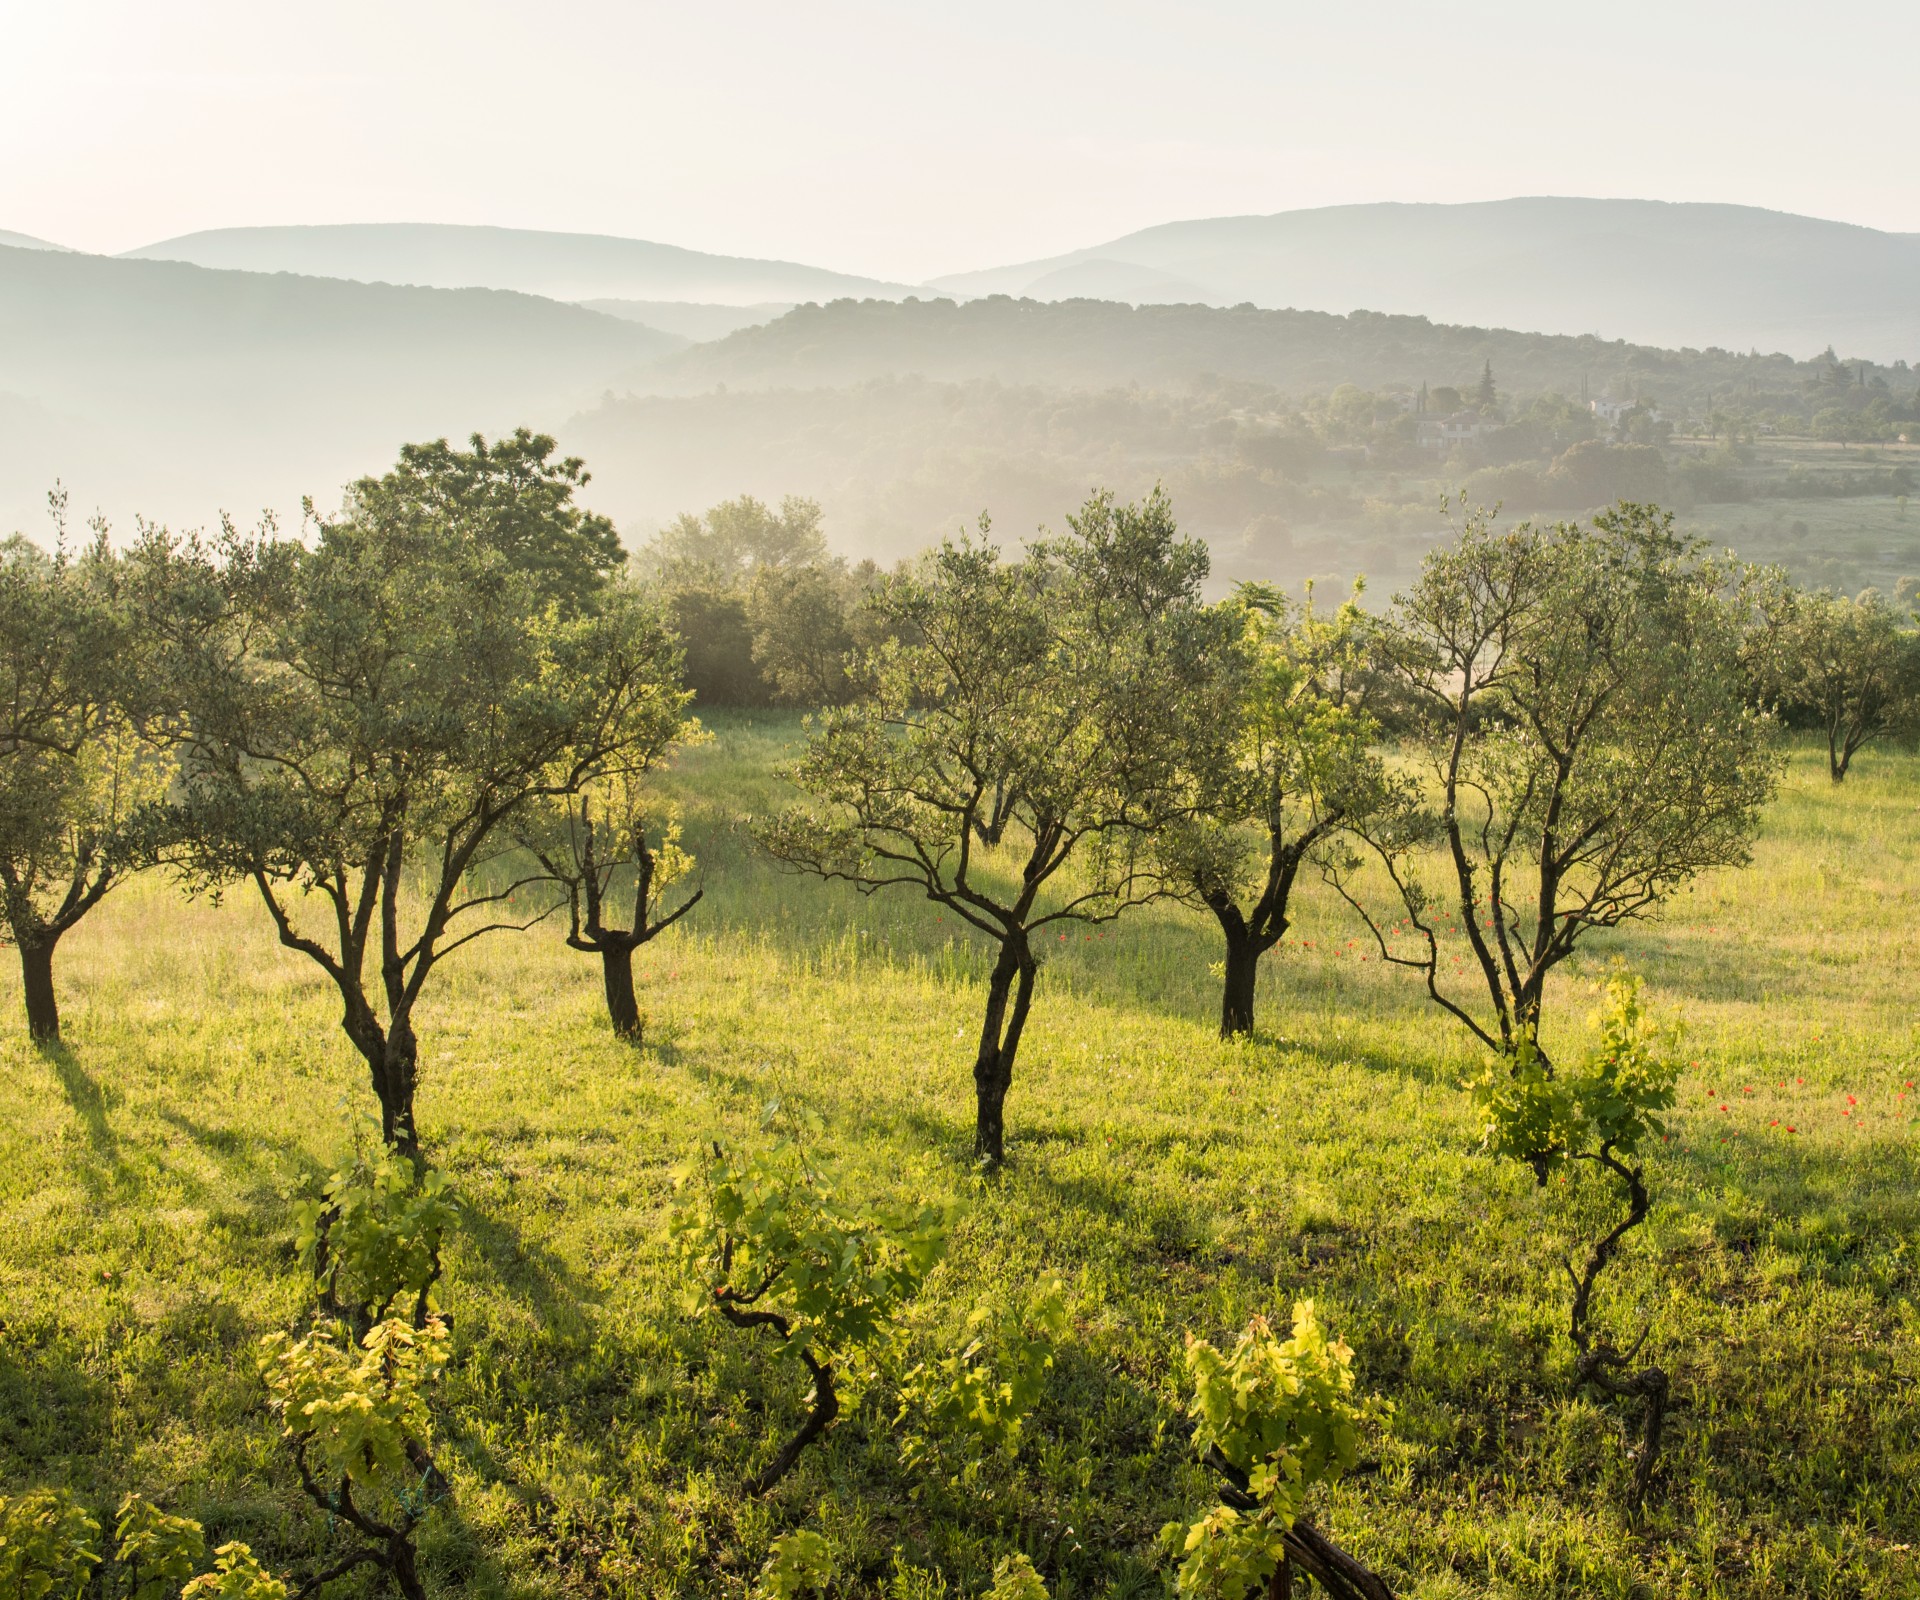 Olivenhaine auf grüner Wiese vor dunstiger Hügellandschaft im Hintergrund